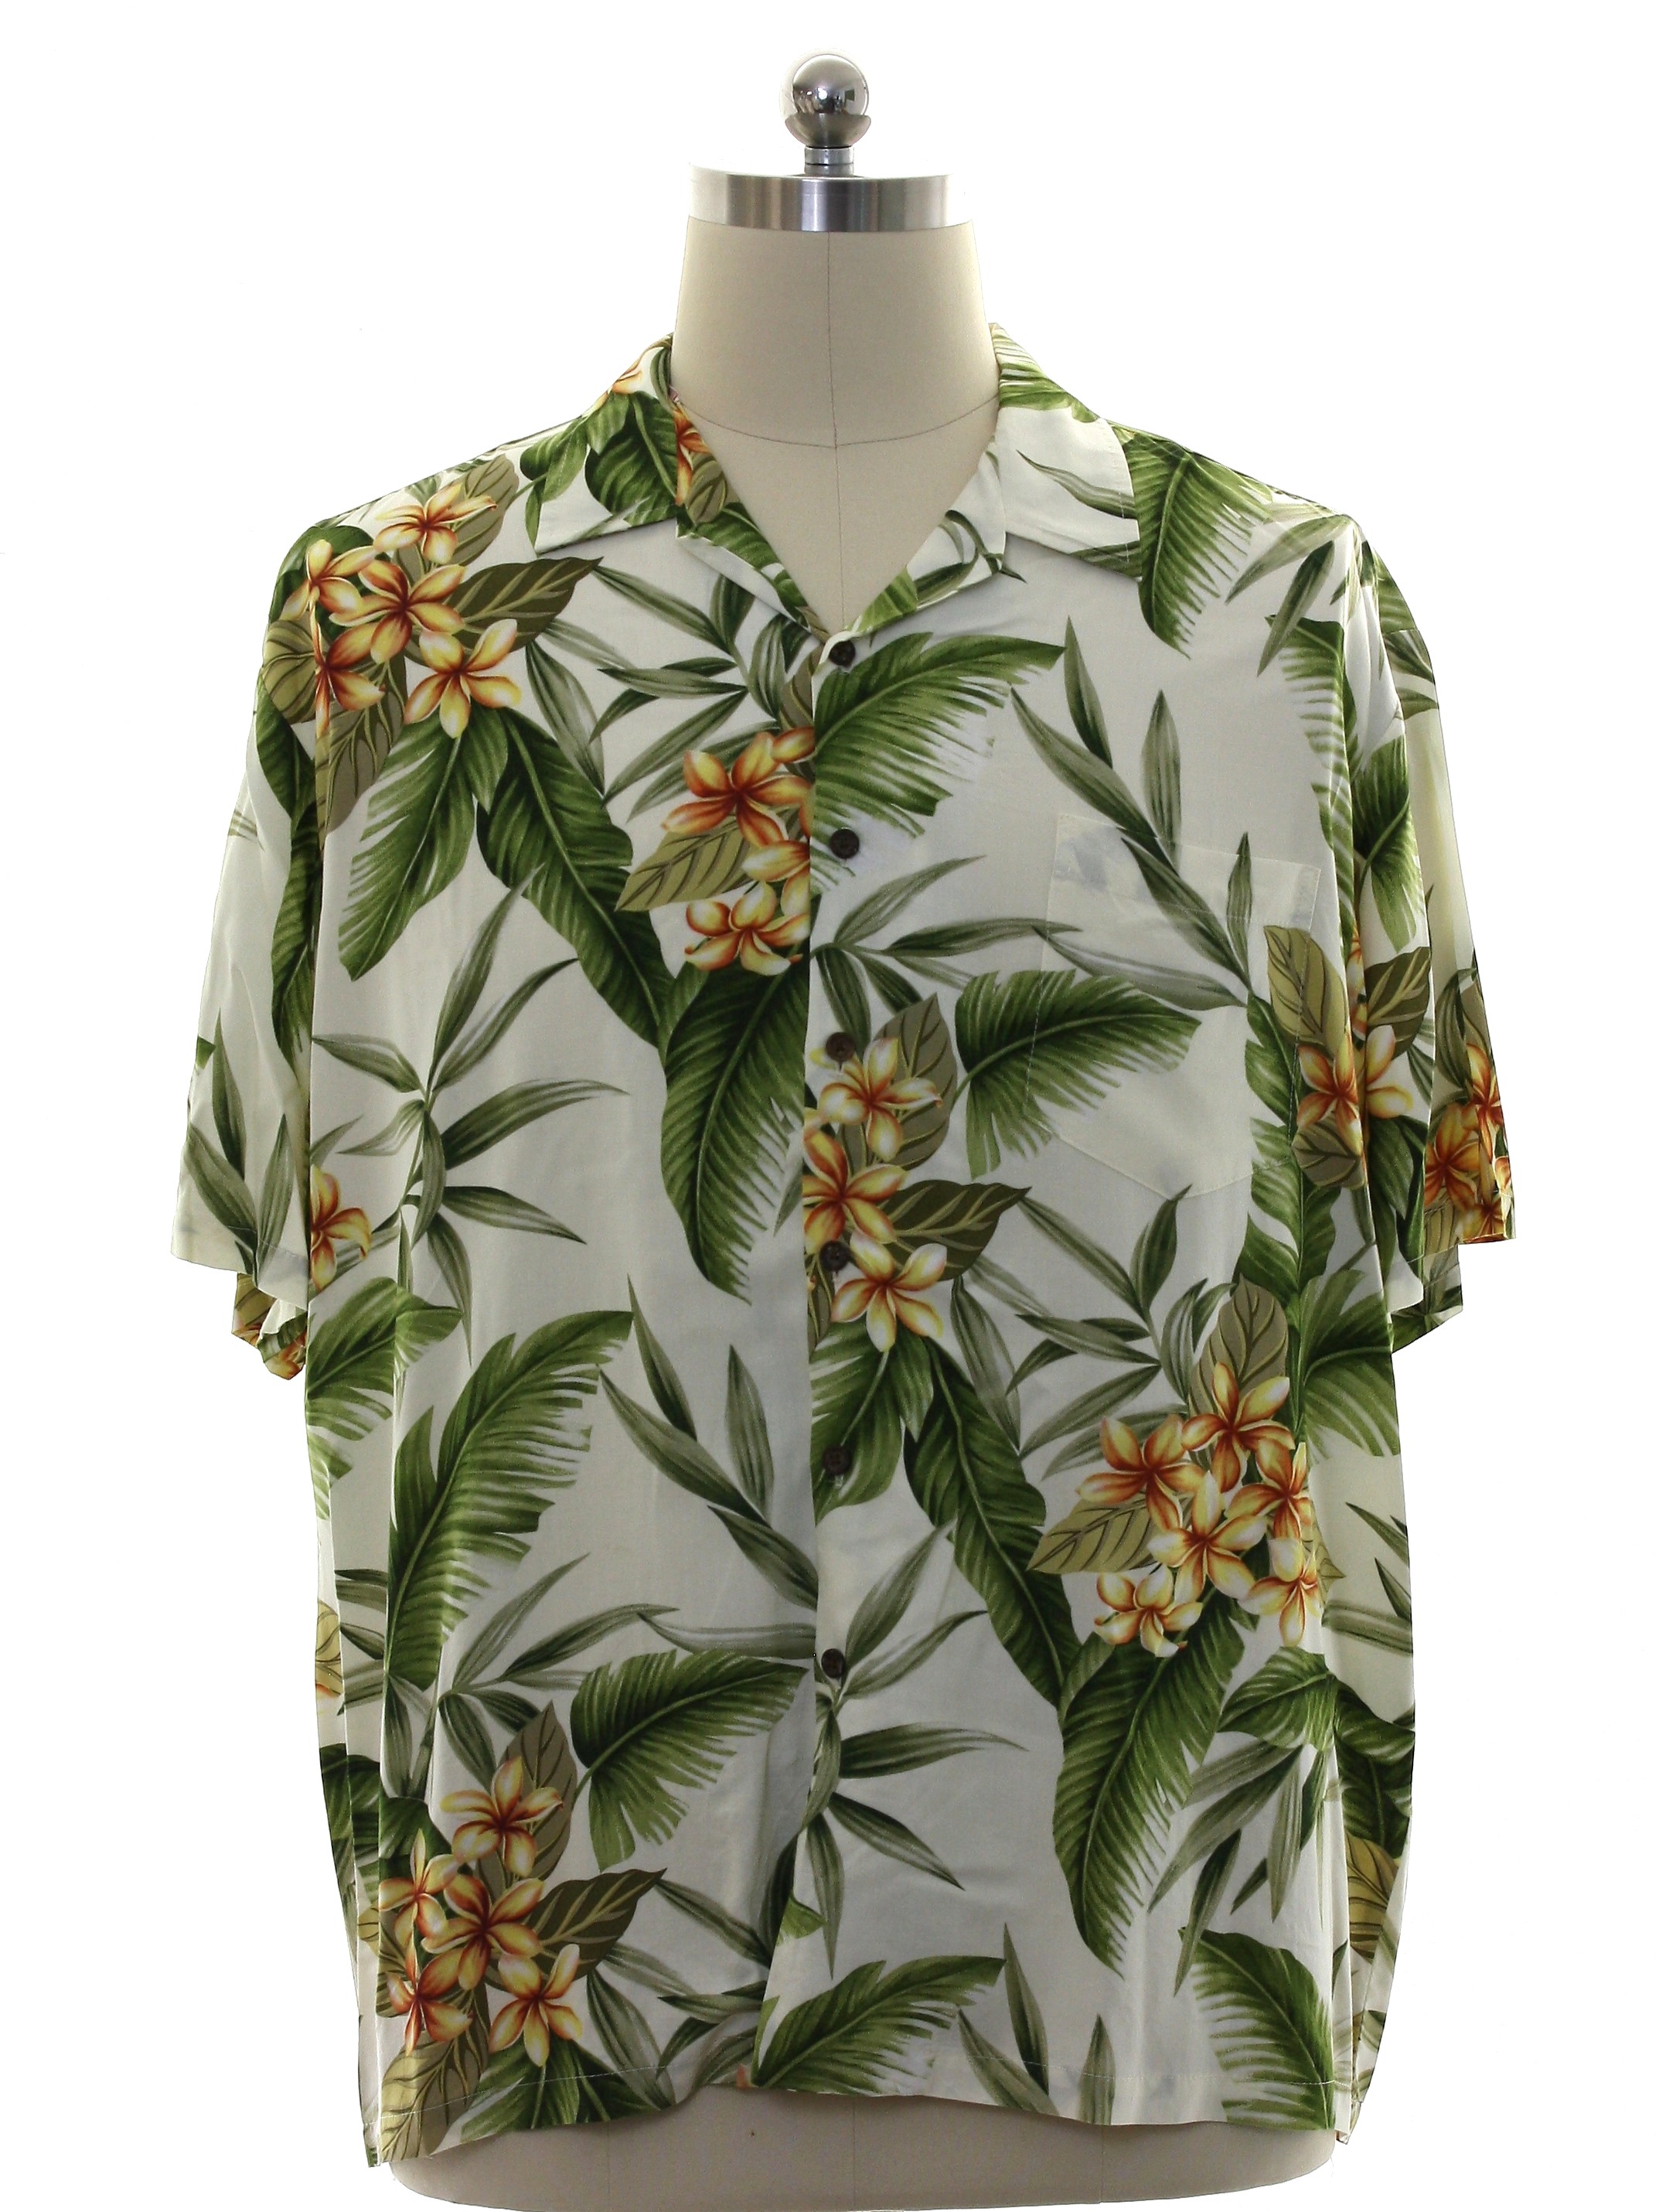 80s Hawaiian Shirt (Kalaheo Made in Hawaii): Late 80s or Early 90s ...